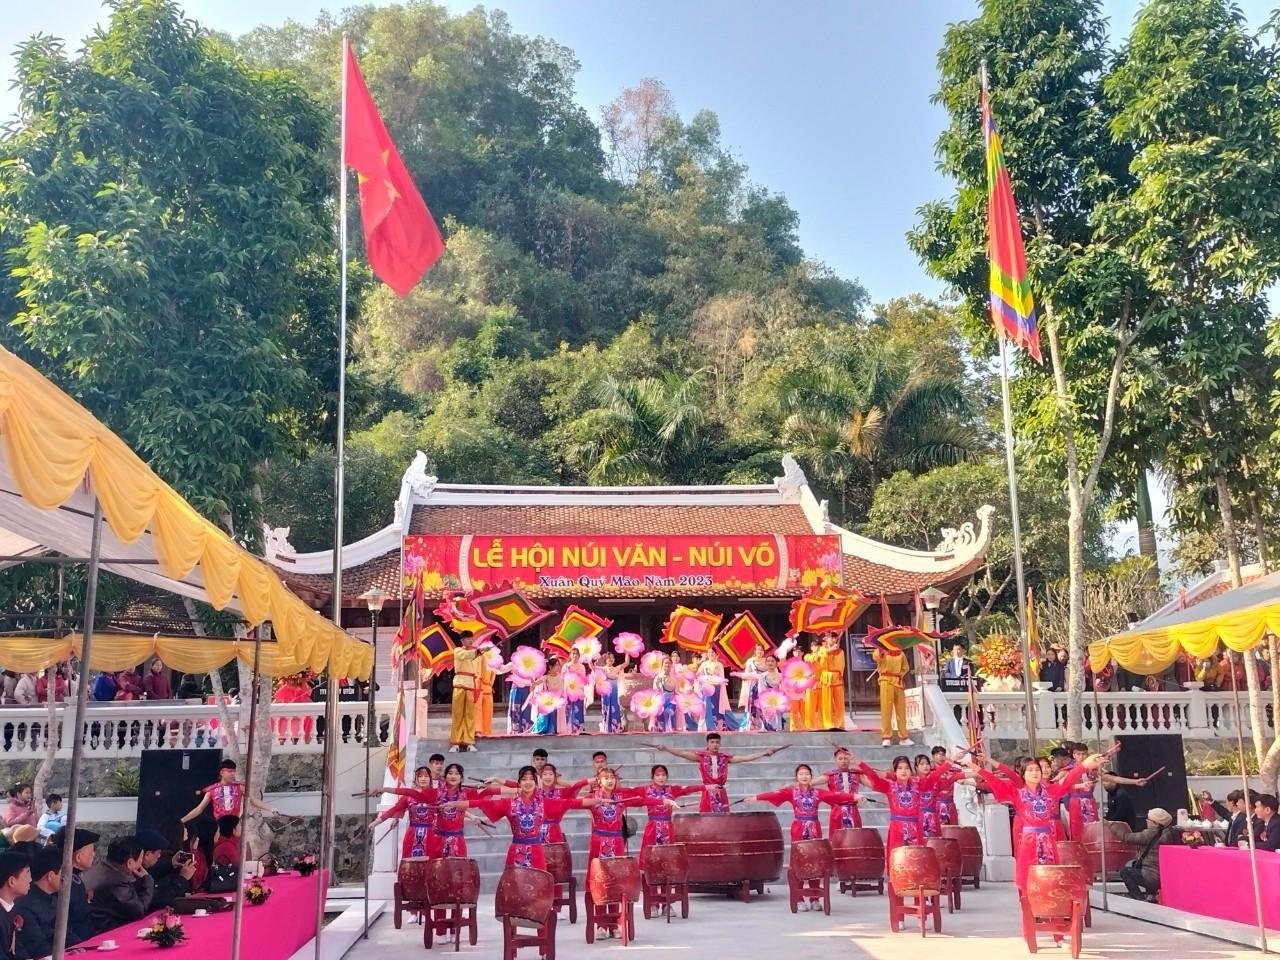 Những điểm đến du lịch tâm linh thu hút du khách dịp đầu xuân tại Thái Nguyên